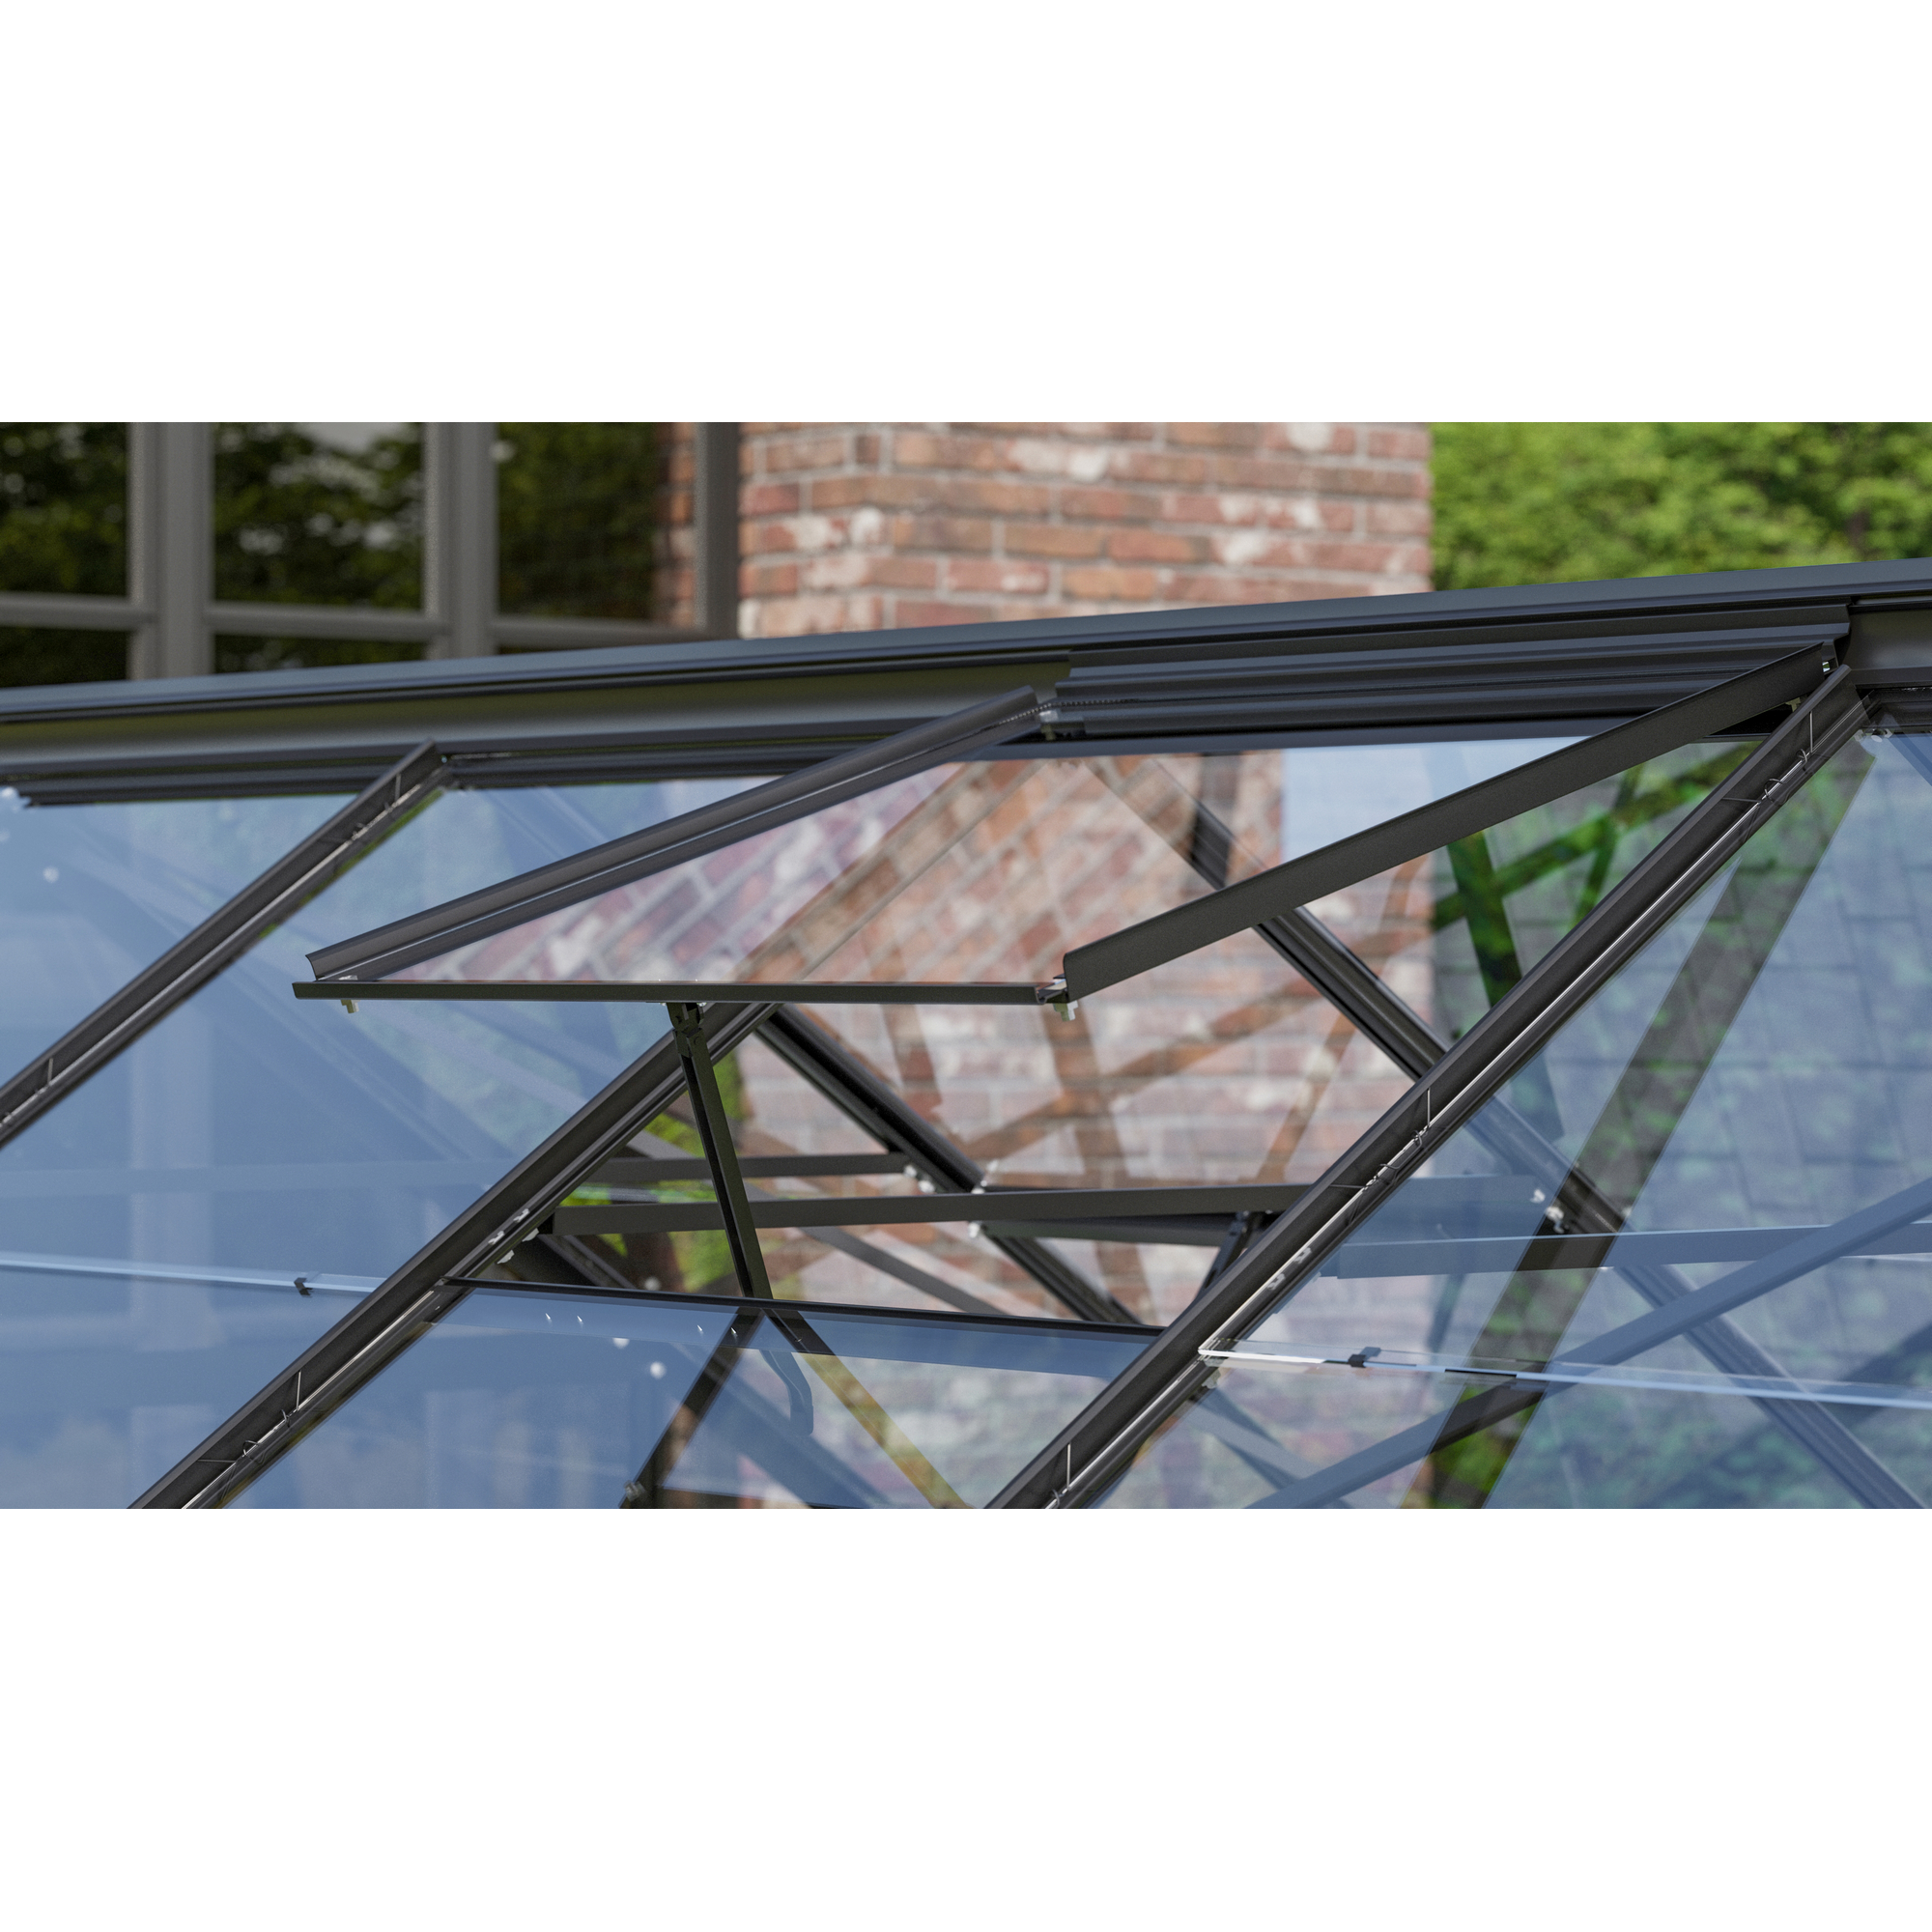 Dachfenster für Gewächshäuser, Aluminium, anthrazit 61,6 x 57,3 cm + product picture